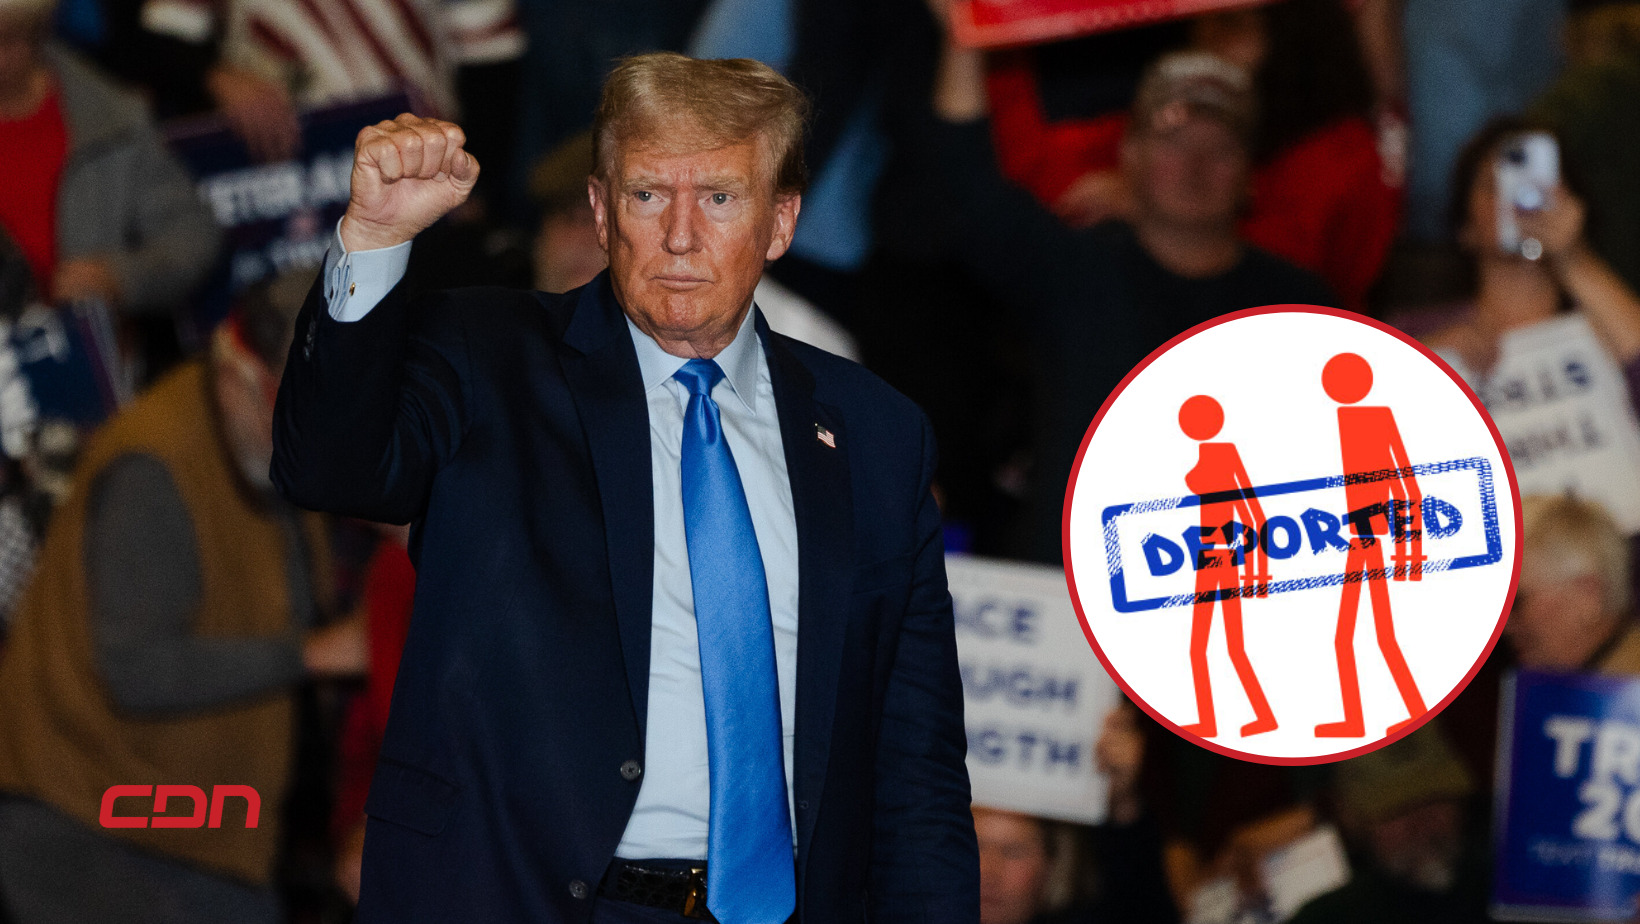 Donald Trump promete un gran operativo de deportación